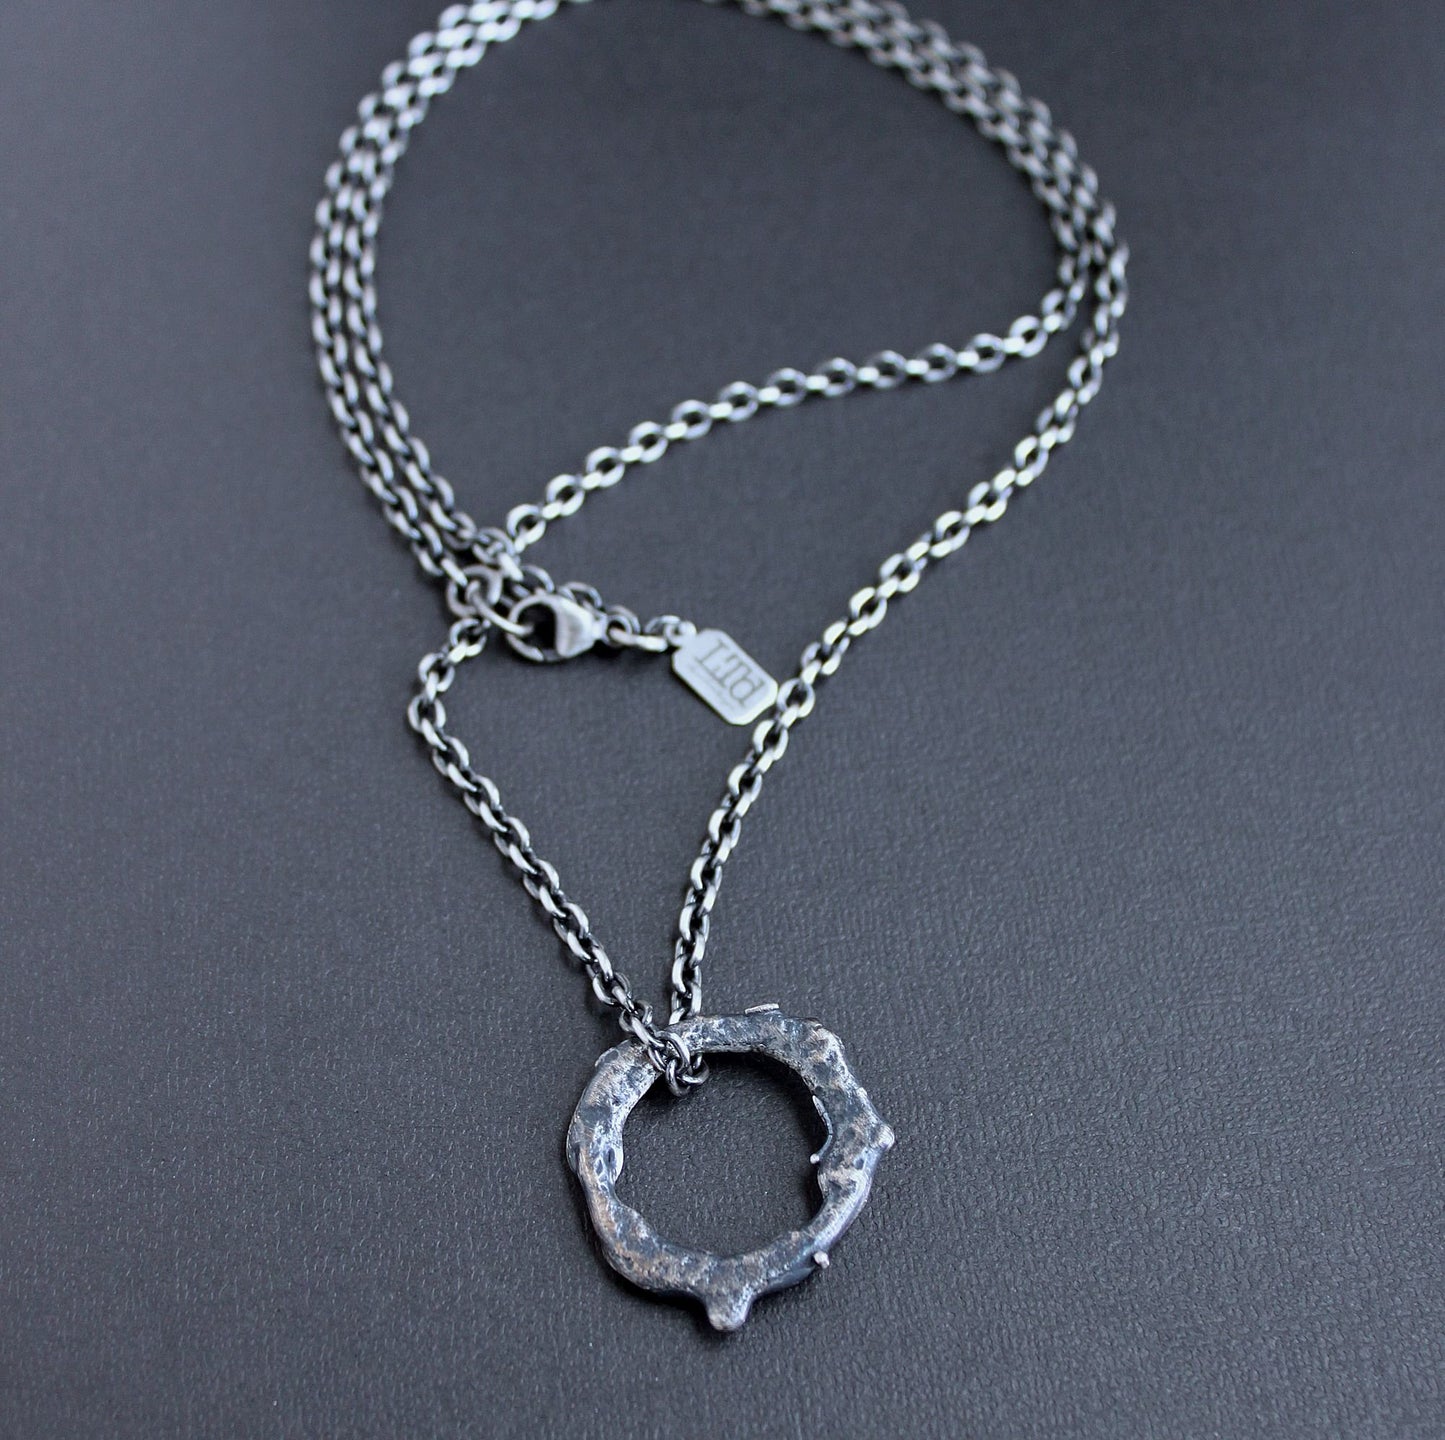 Men's Reversible Silver Pendant Necklace